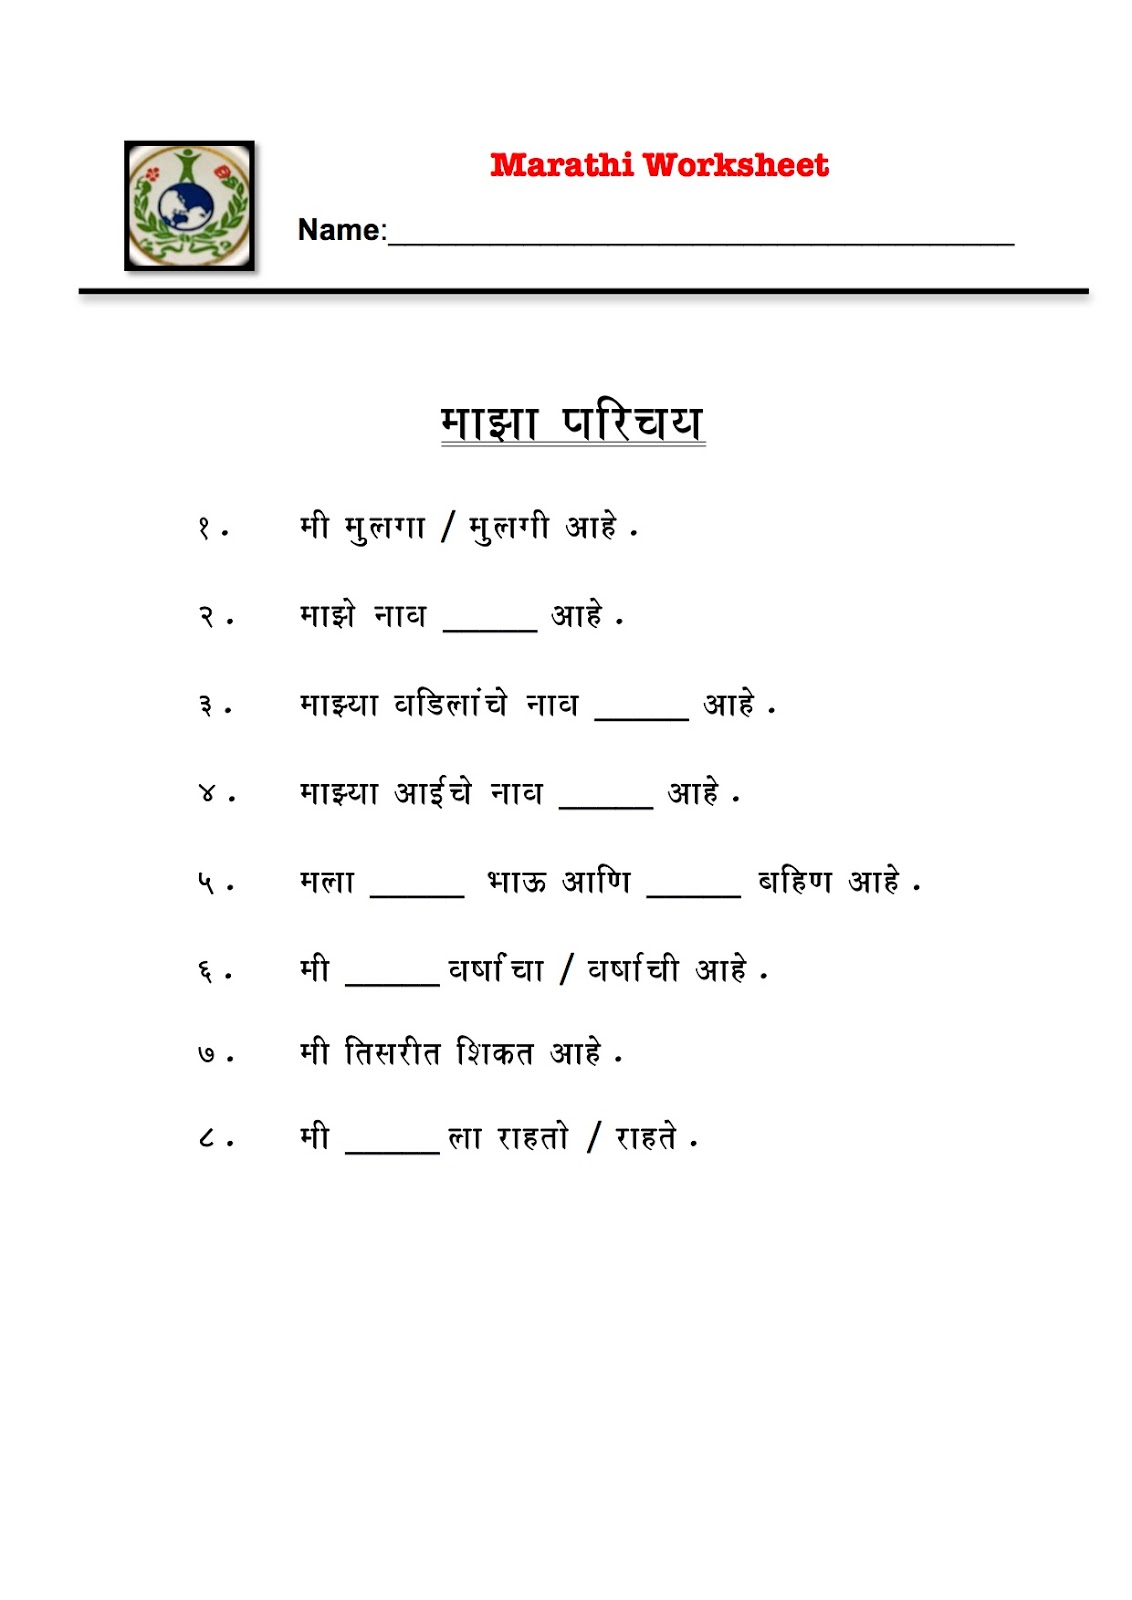 marathi-worksheets